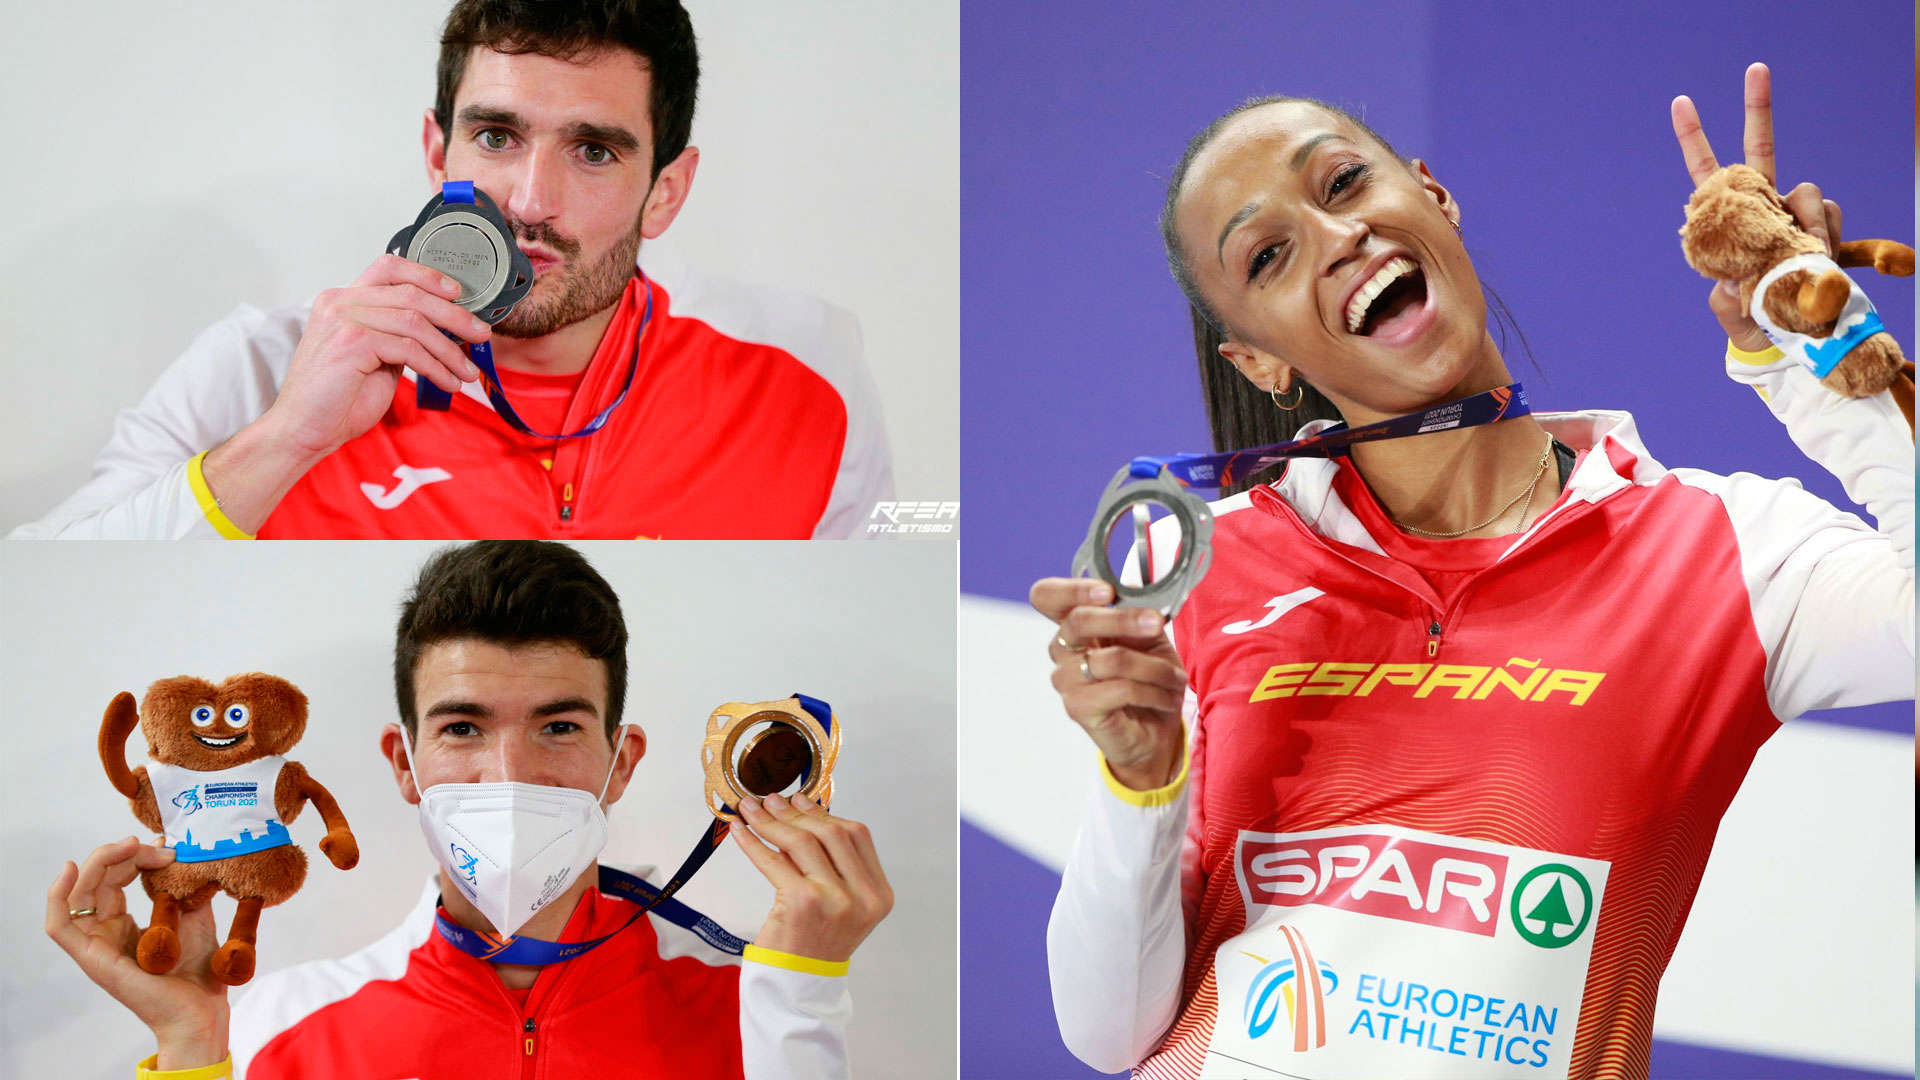 Jorge Ureña, Adel Mechaal y Ana Peleteiro, medallistas en el Europeo Indoor 2021 de atletismo